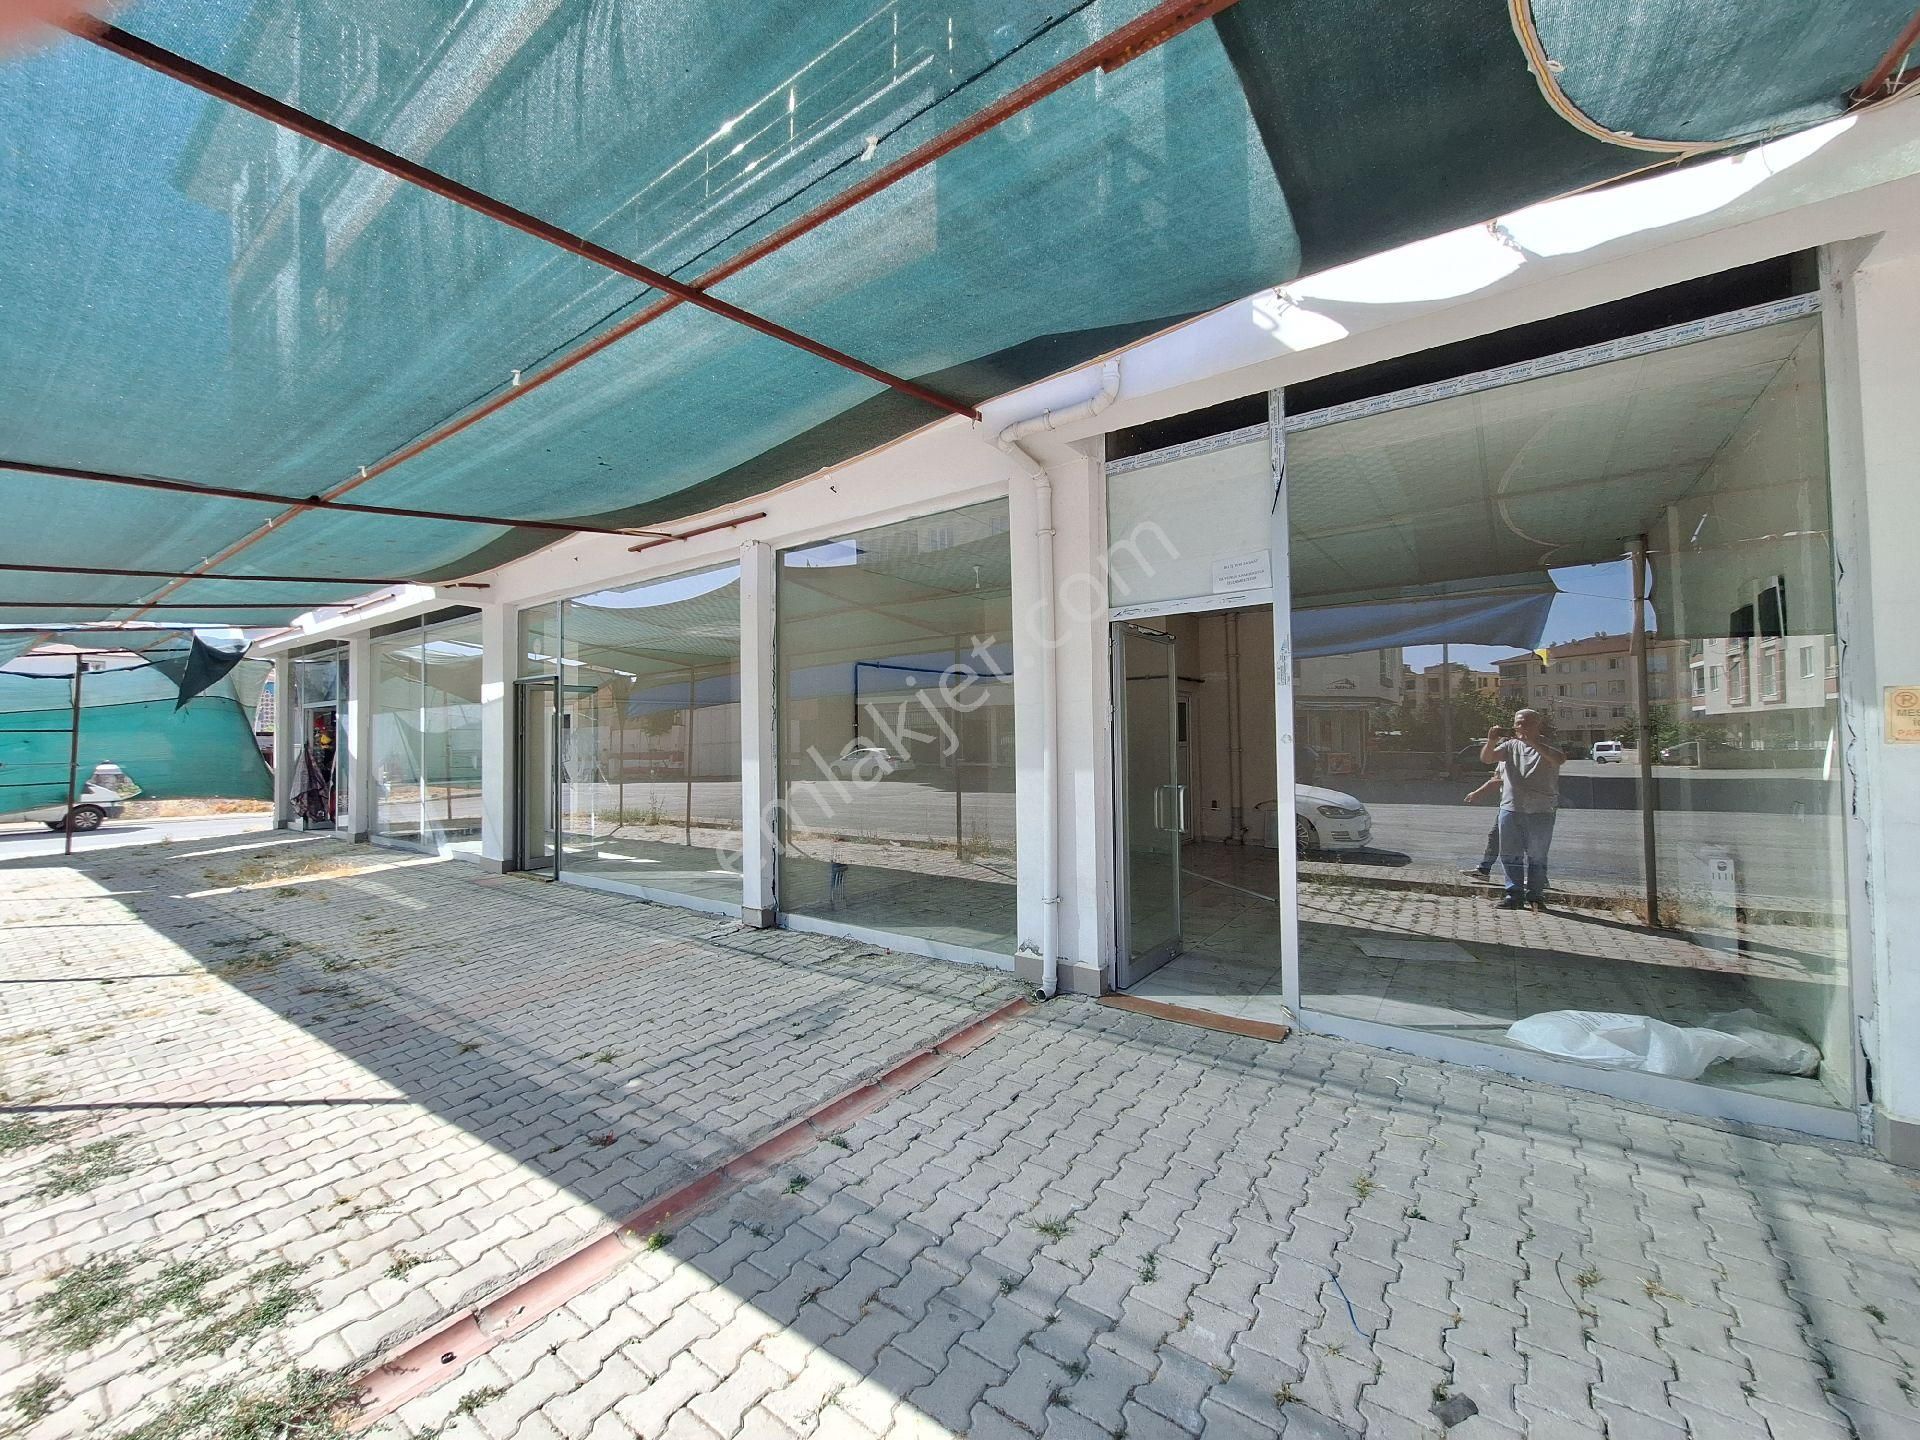 Malatya Battalgazi Kiralık Dükkan & Mağaza İskender mahlesinde kiralık işyeri